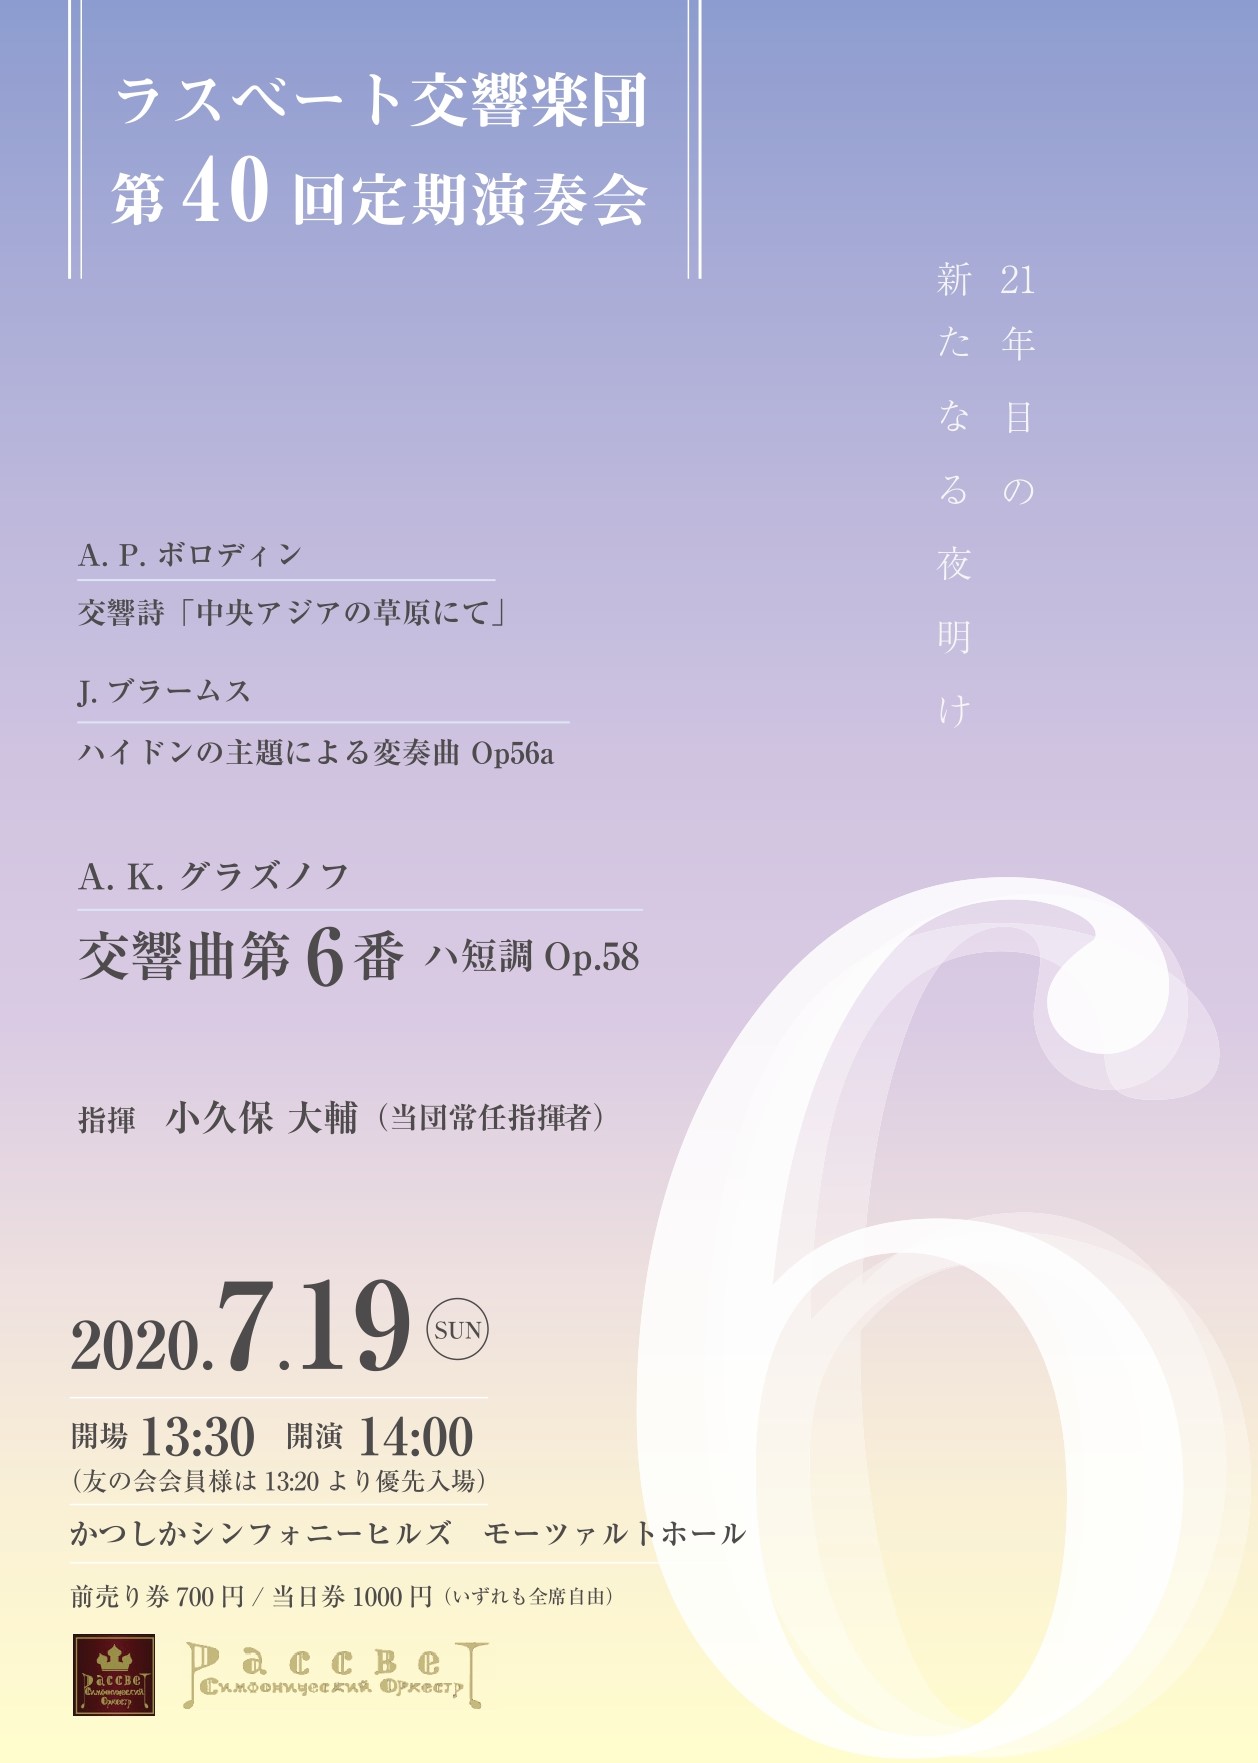 【公演延期】ラスベート交響楽団 第40回定期演奏会